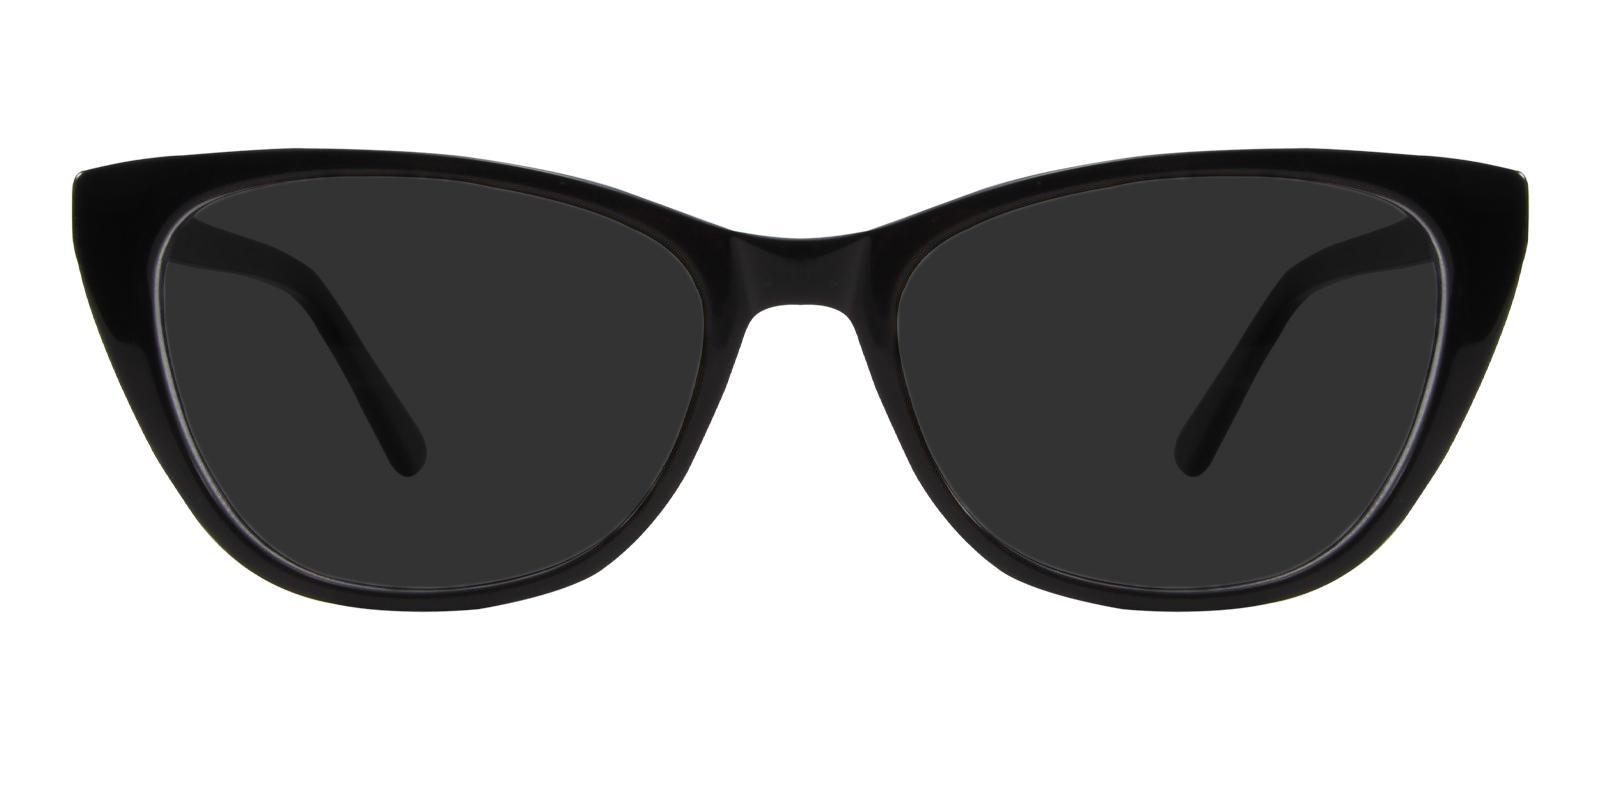 Ledger Black Acetate SpringHinges , Sunglasses , UniversalBridgeFit Frames from ABBE Glasses